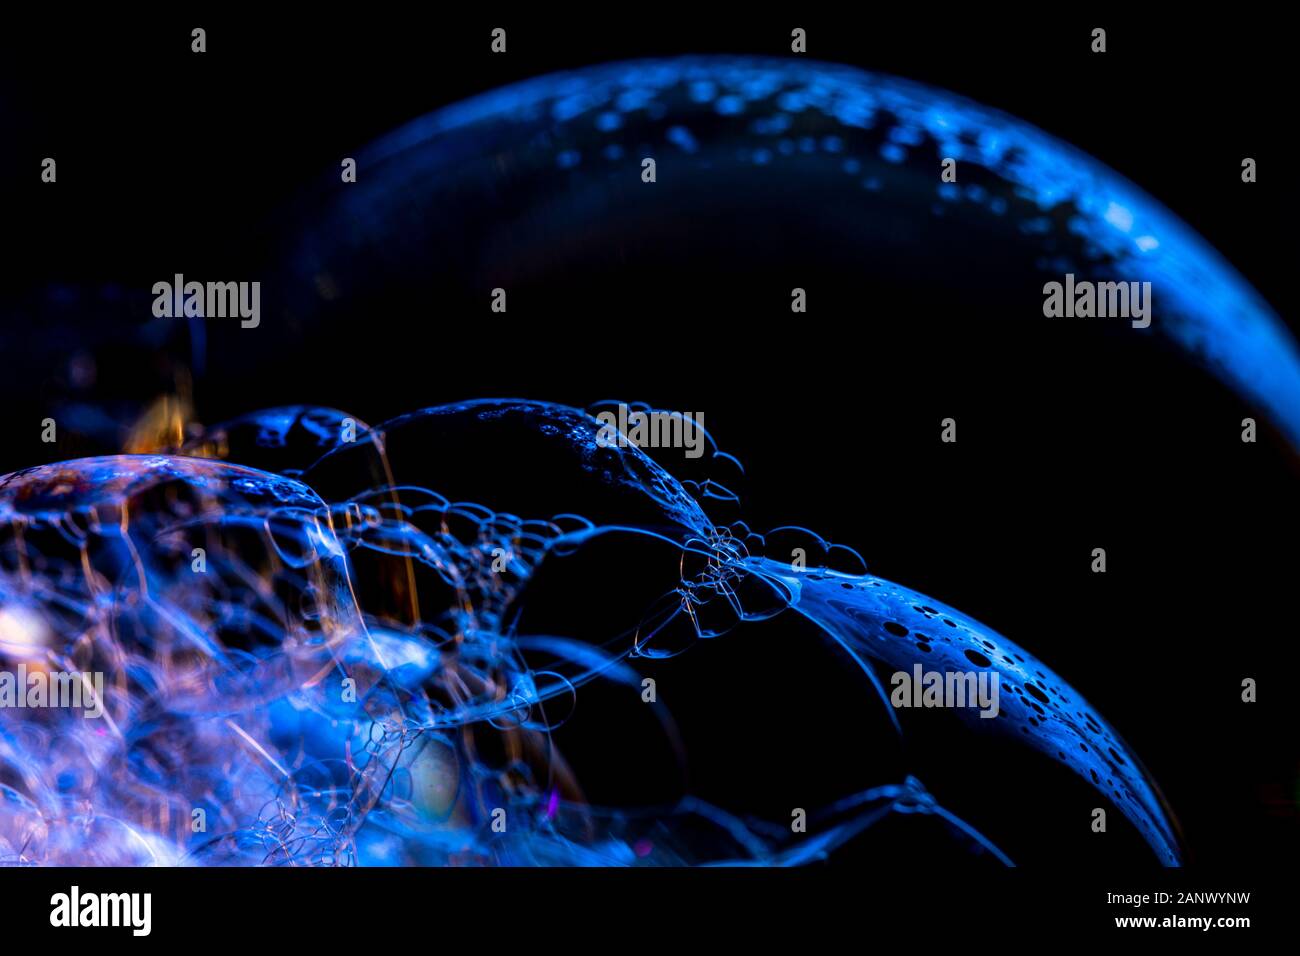 Kreative Zusammenfassung Hintergrund der Kette von Bläschen Struktur in dunklen Blautönen gemacht Stockfoto